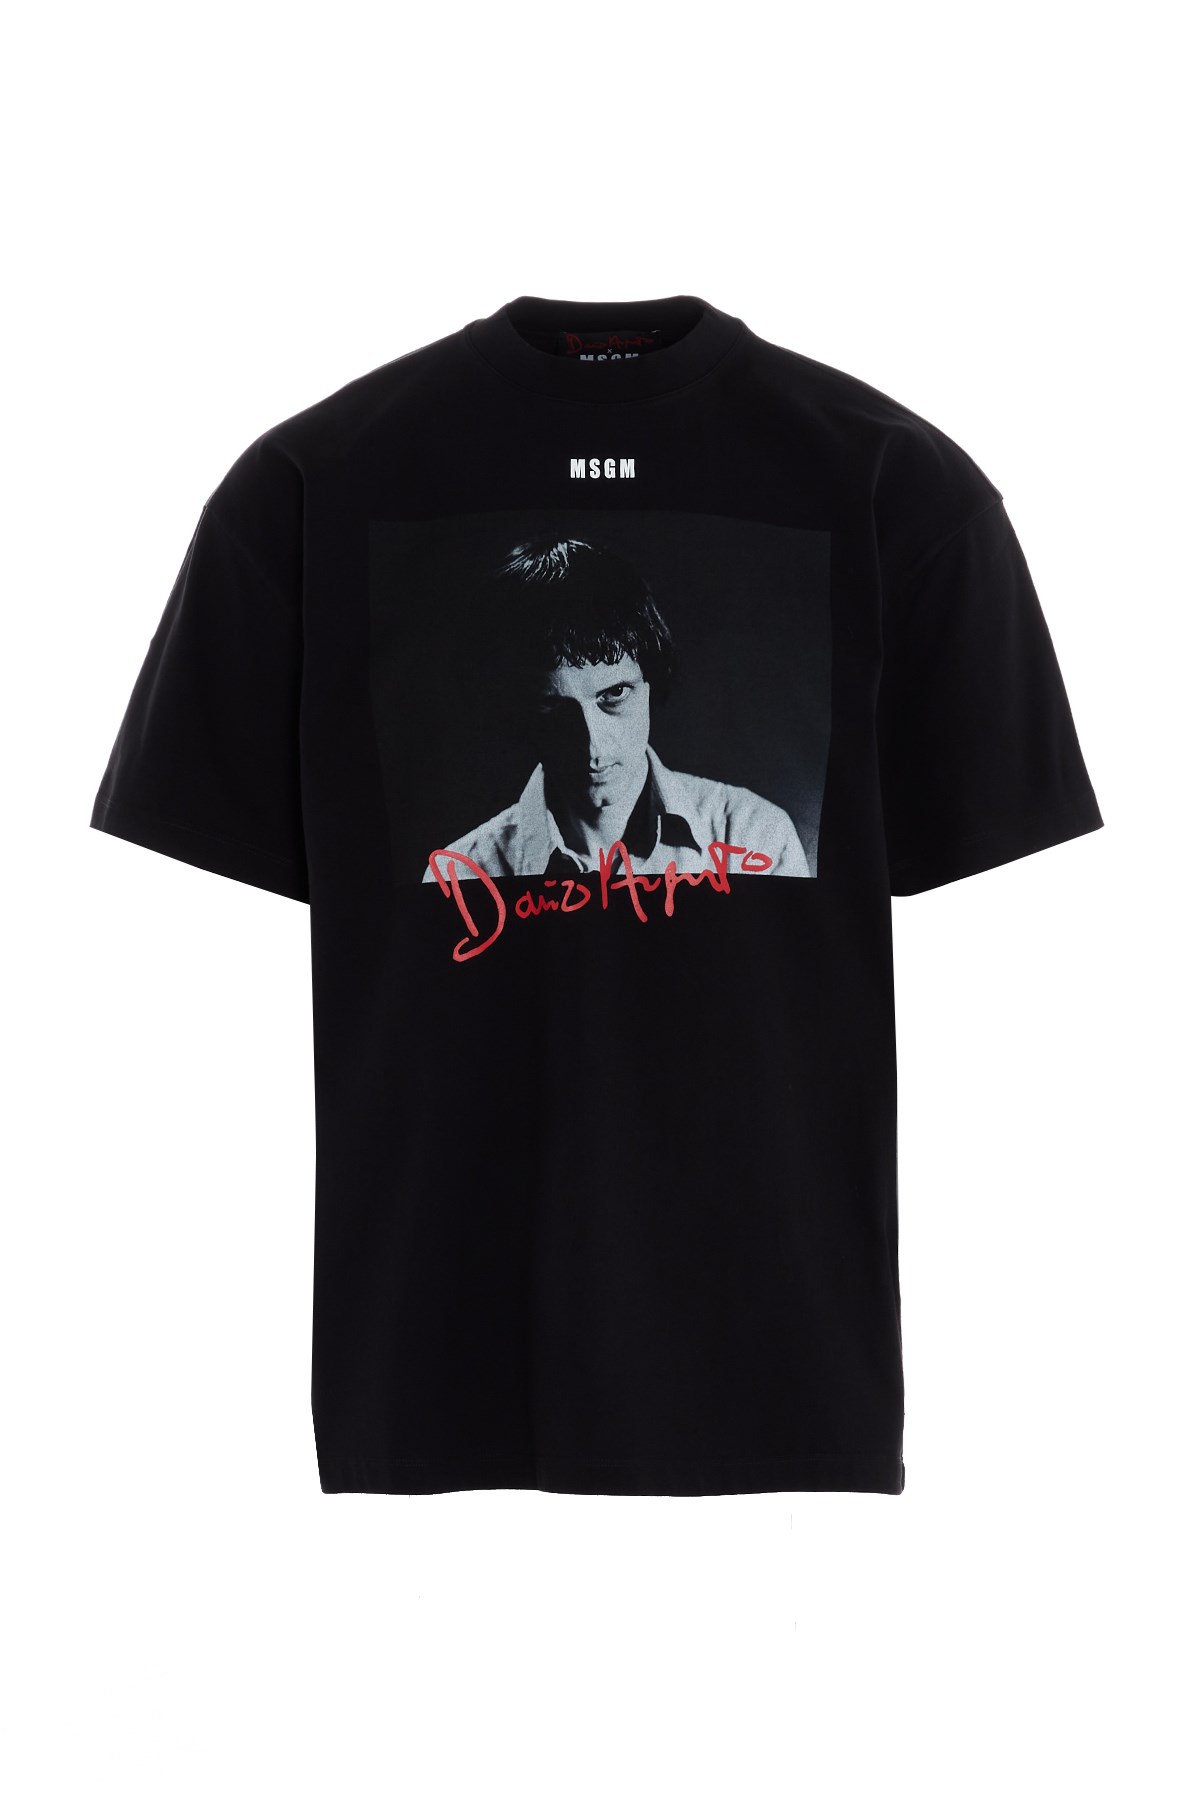 MSGM T-Shirt ' Dario Argento '